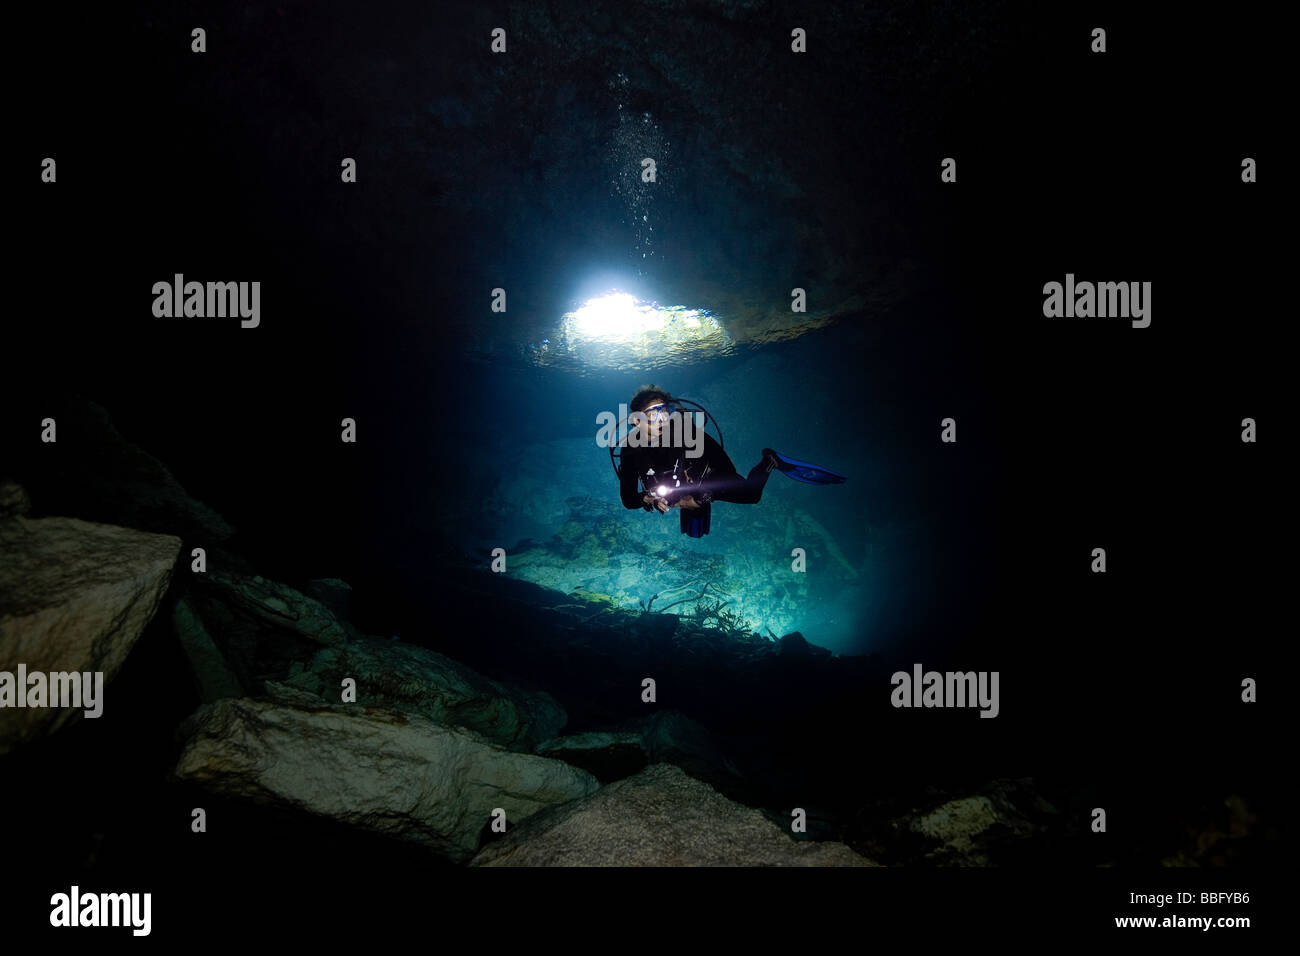 Scuba diver in cavern. Stock Photo